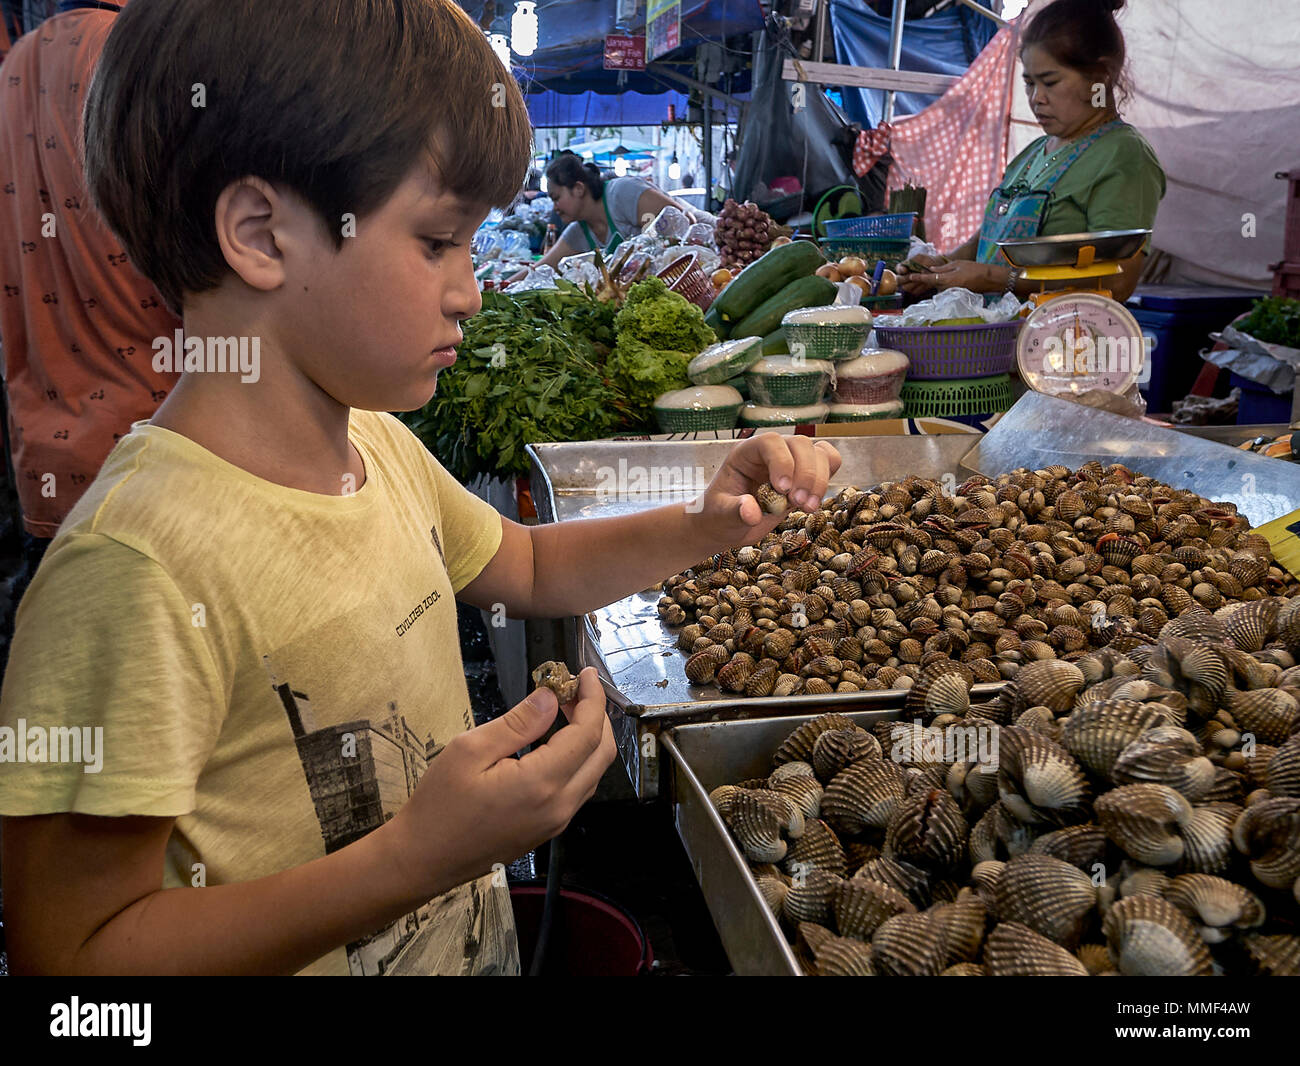 La curiosidad. Joven curiosamente estudiando los caracoles en un mercado callejero de Tailandia cale. Foto de stock